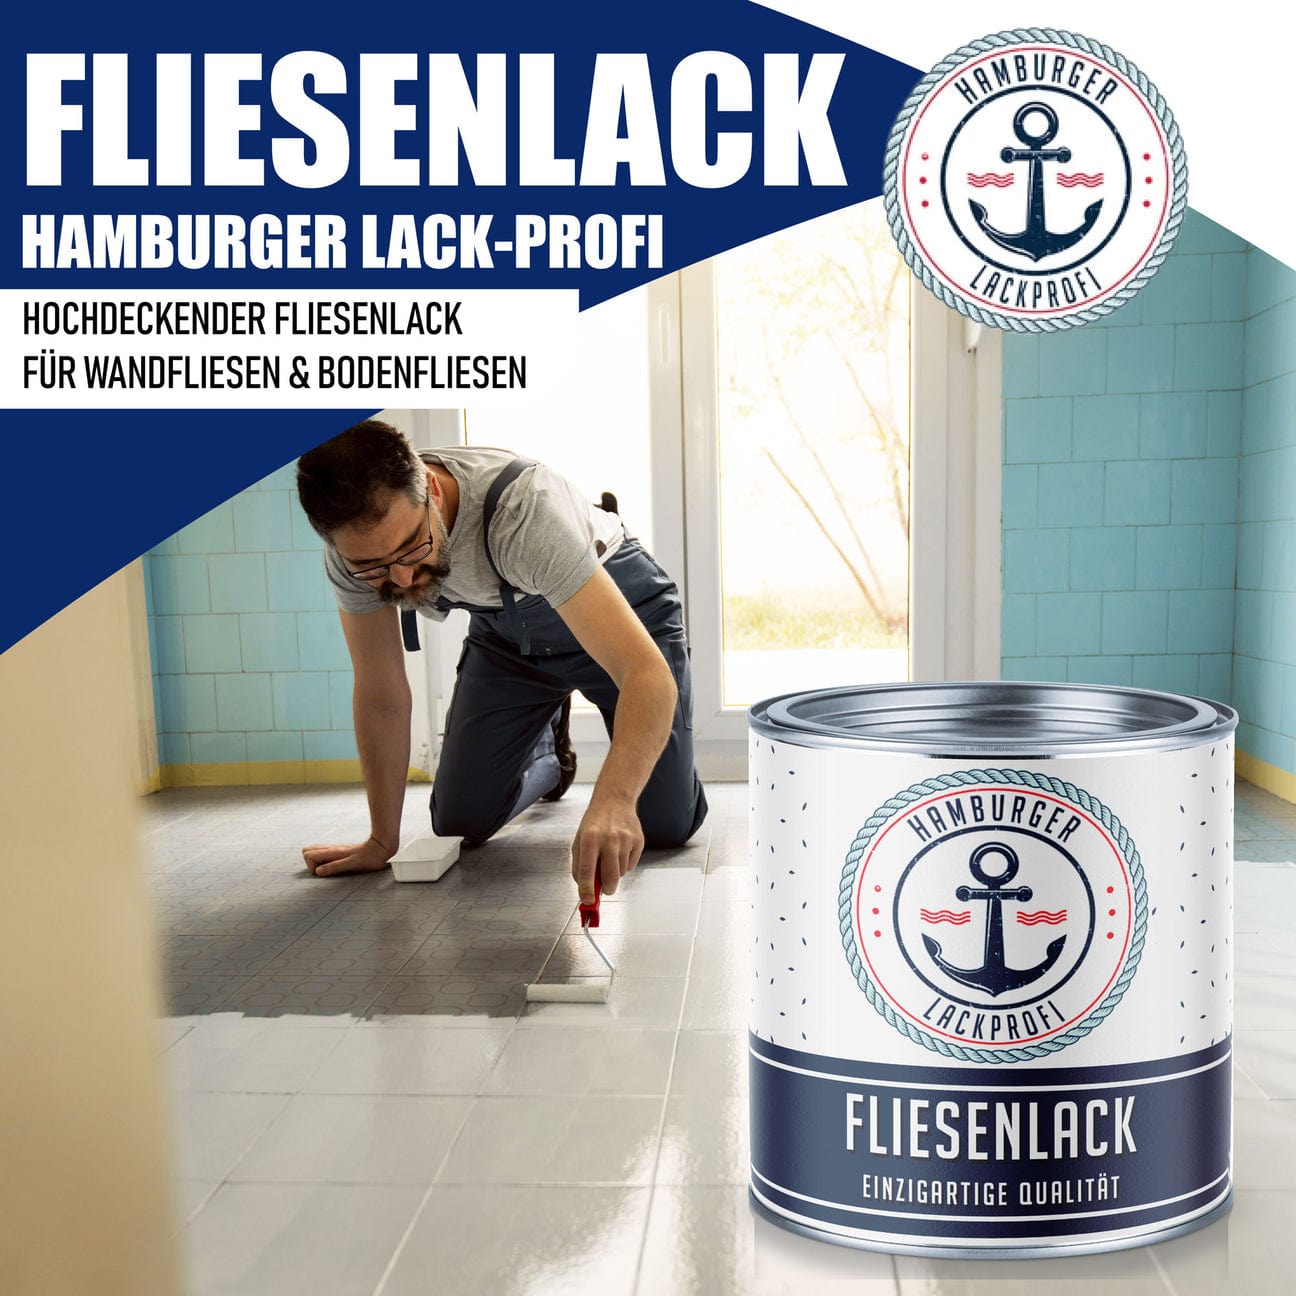 Hamburger Lack-Profi Hamburger Lack-Profi Fliesenlack Blassbraun RAL 8025 - hochdeckende Fliesenfarbe Braun